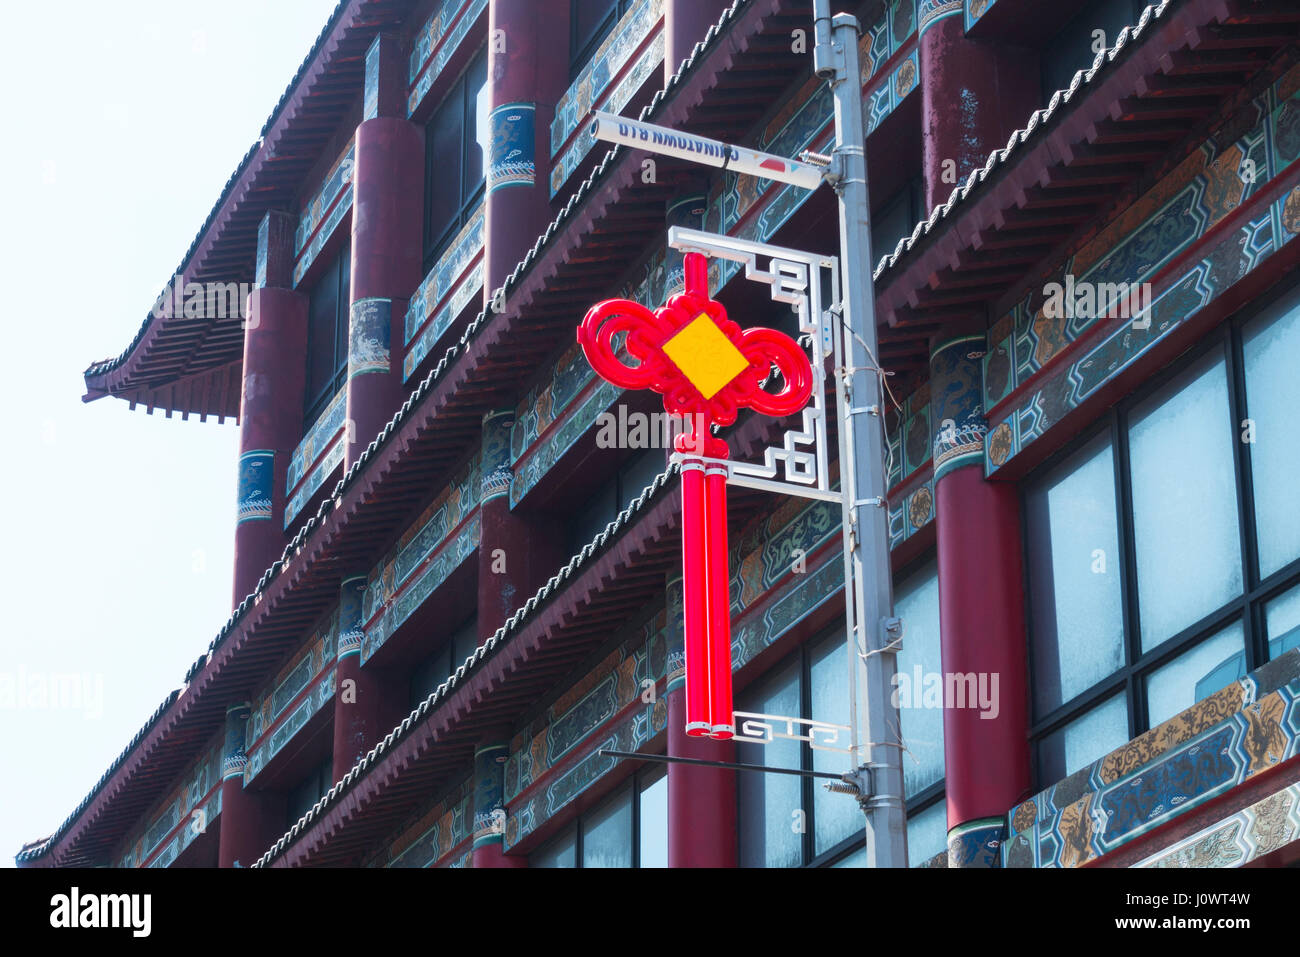 Rote und gelbe Glück Symbol hängen in Chinatown in New York City; die abgerundeten Seiten sagen, dass dieses Glück für die Aktie. Stockfoto